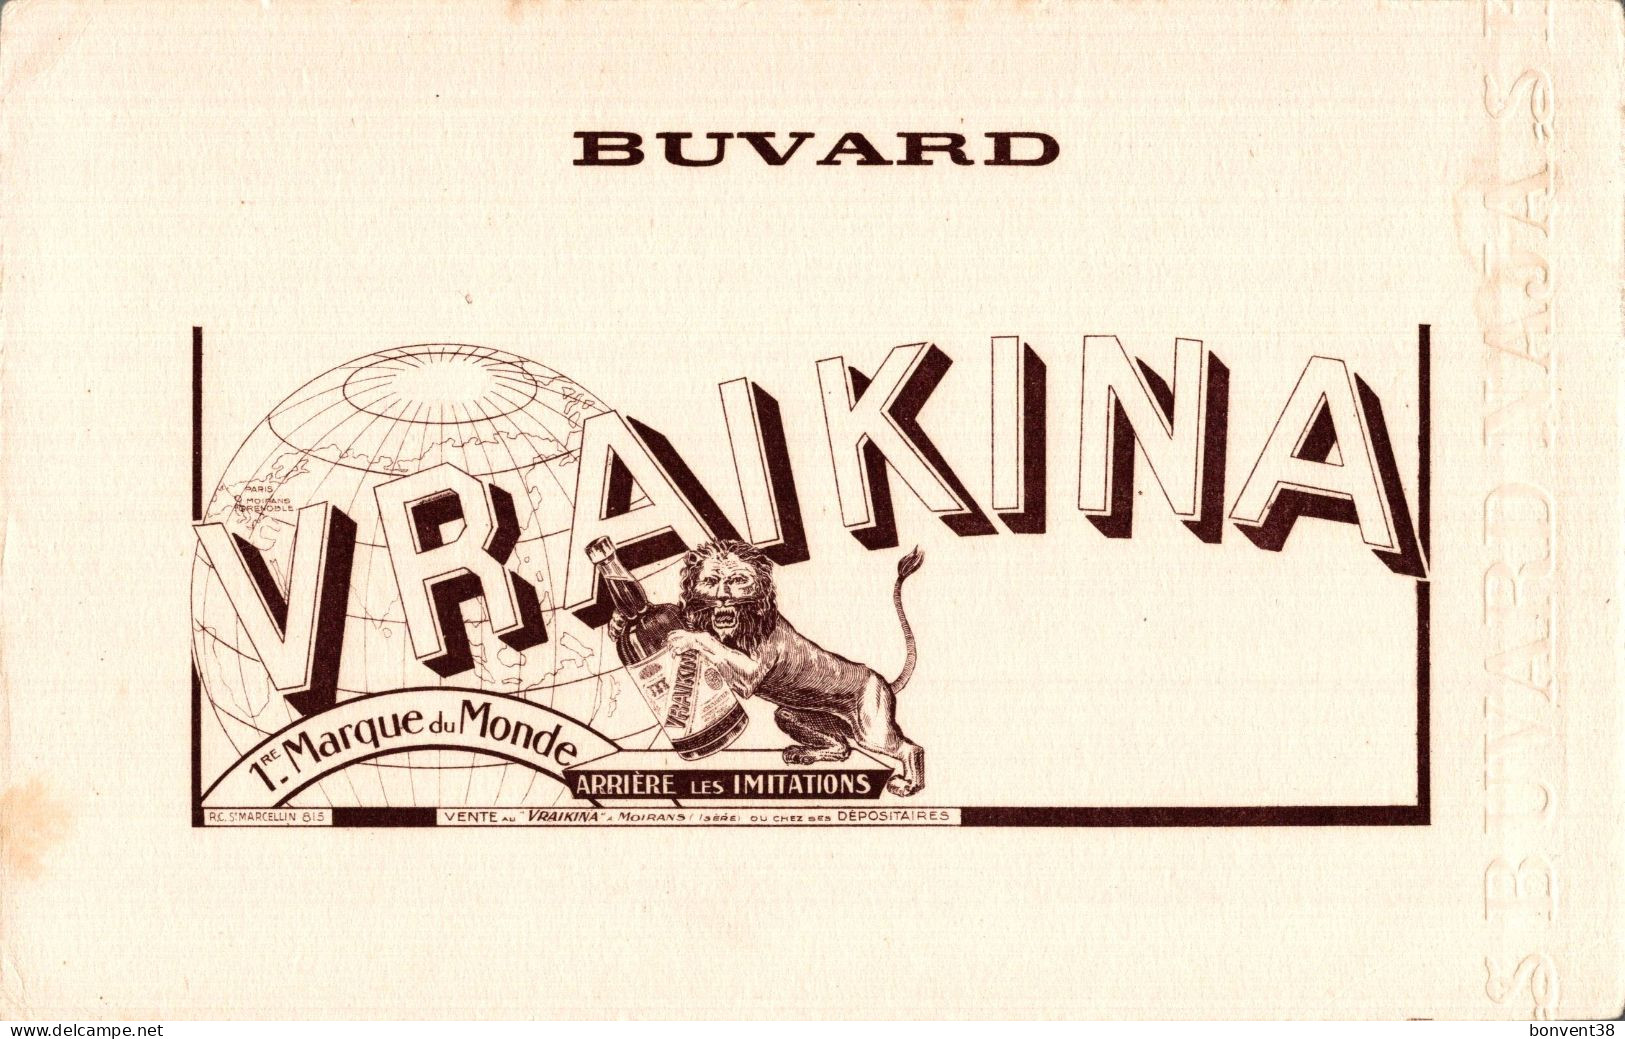 J2707 - BUVARD - VRAIKINA - LION - MOIRANS - Liquor & Beer